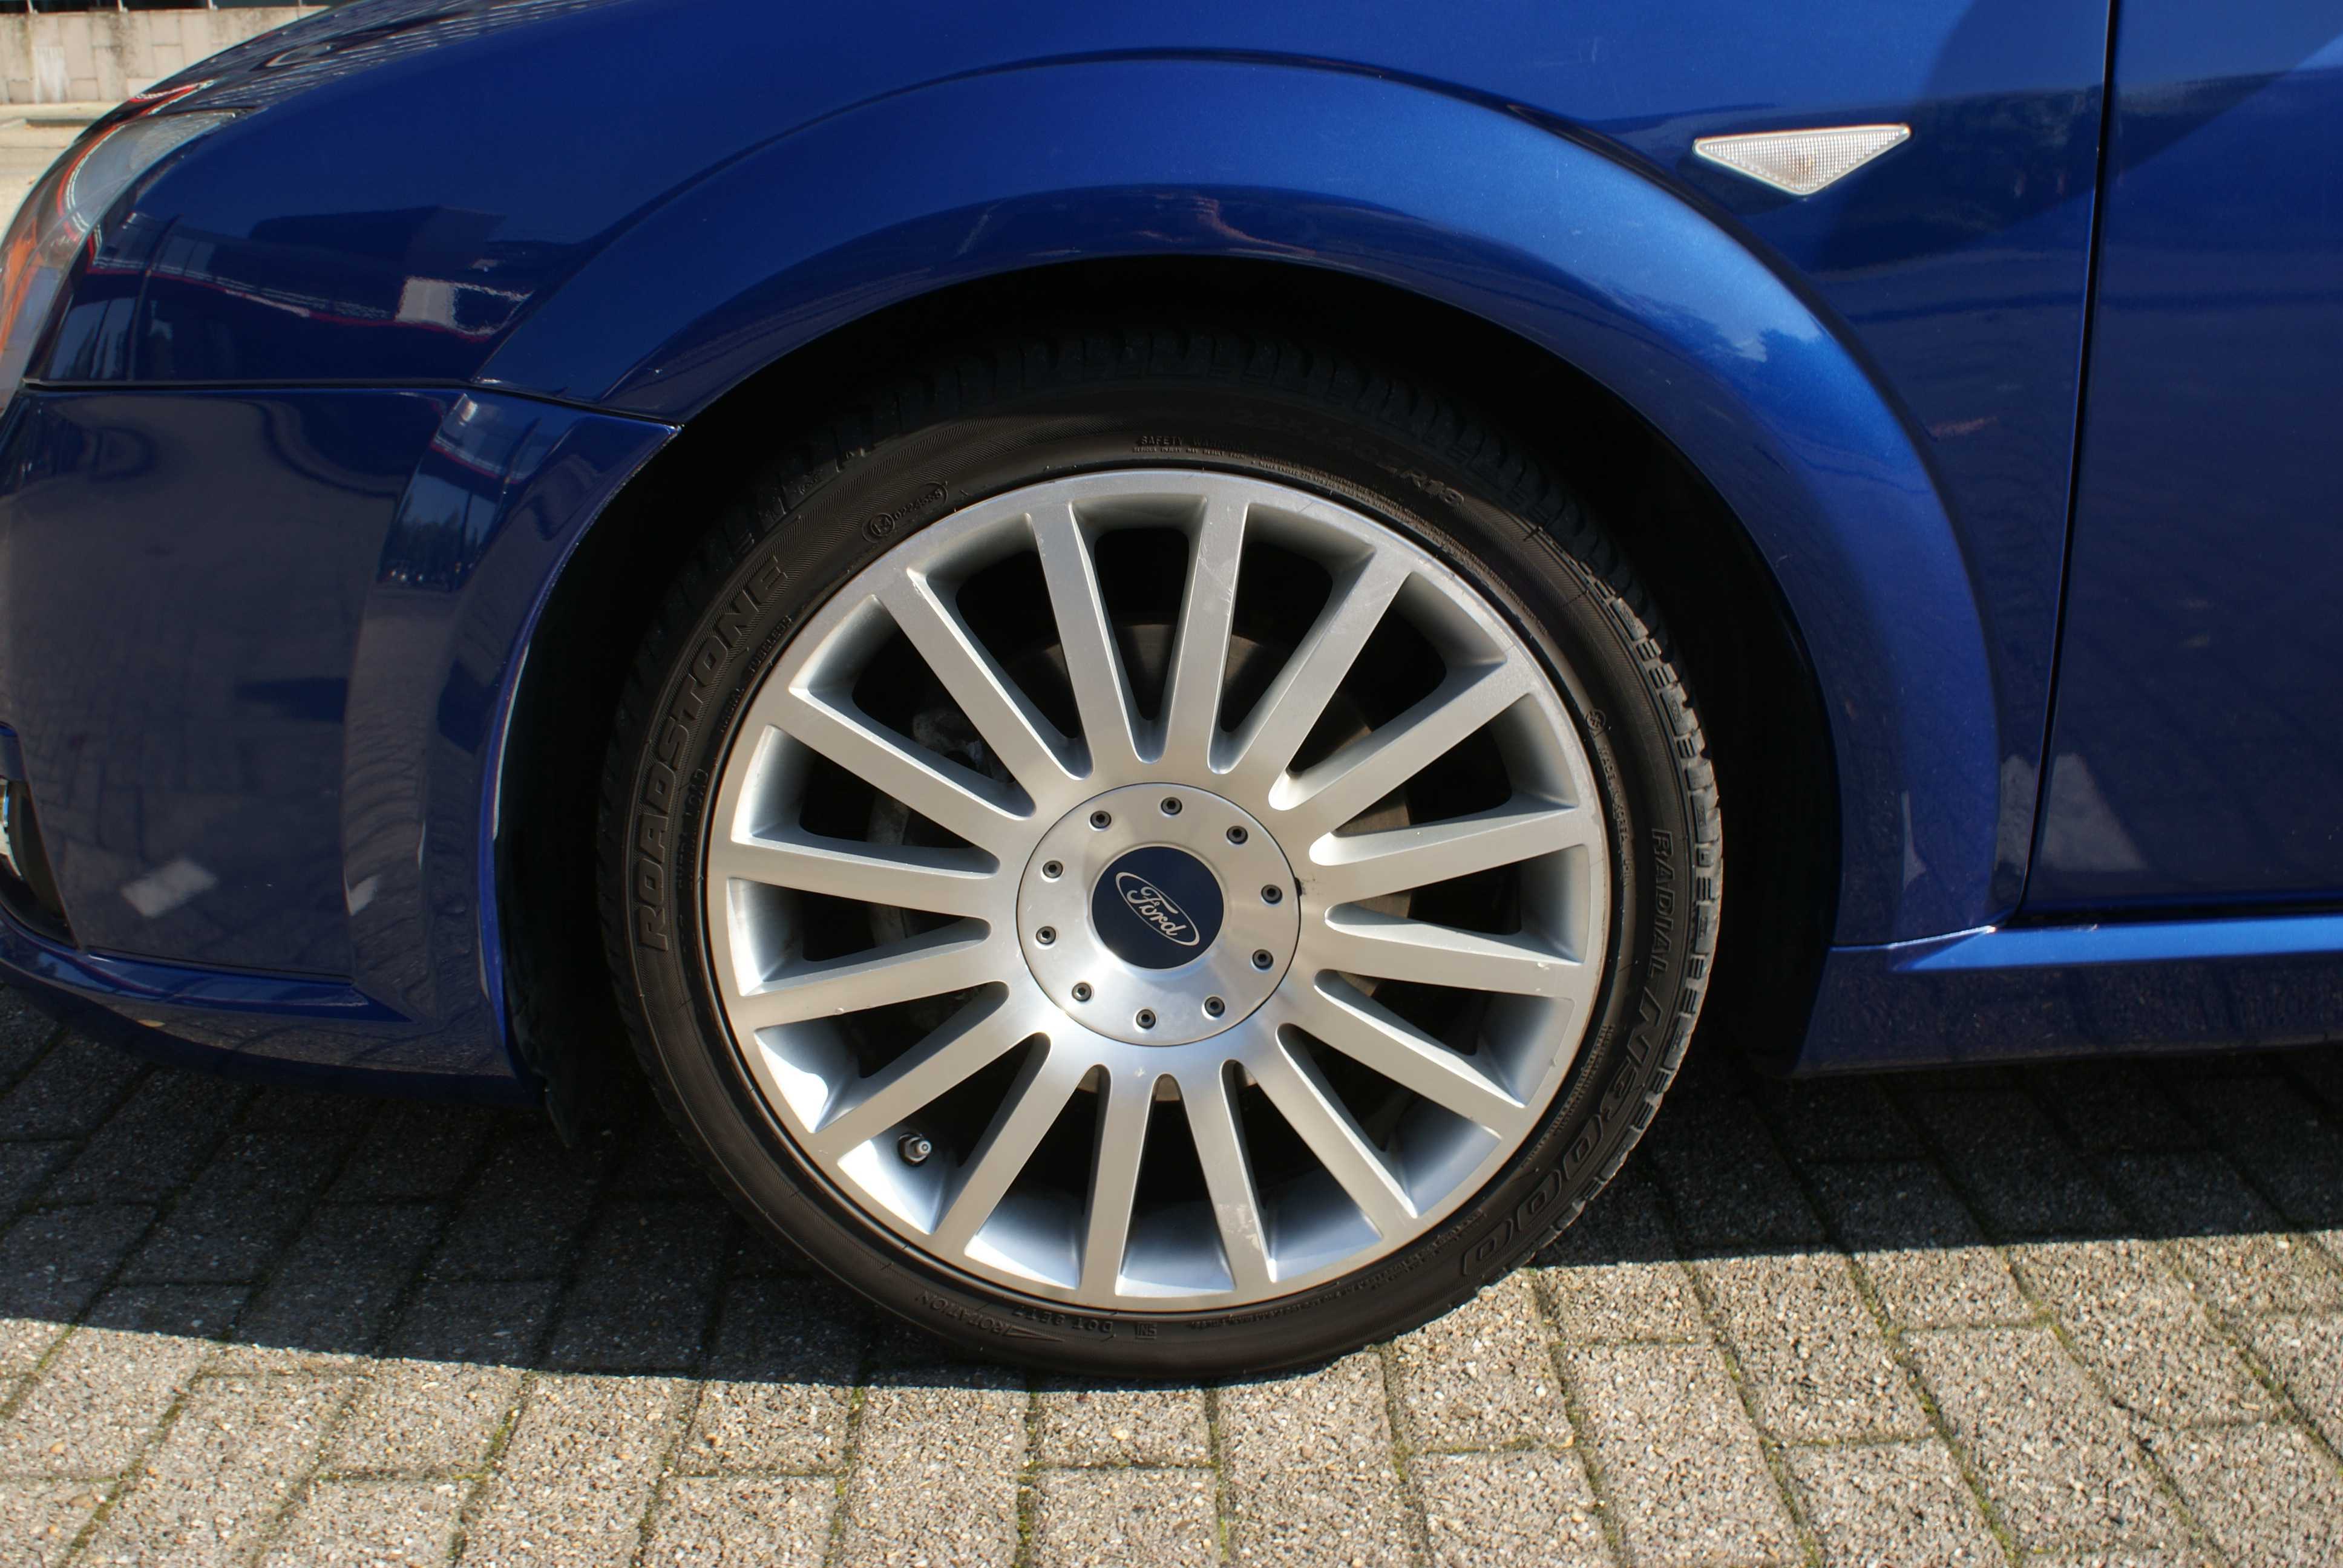 Нормальная накачка колес Форд Транзит Правильная регулировка давления в шинах R15, R16 микроавтобуса, полная и частичная загрузка